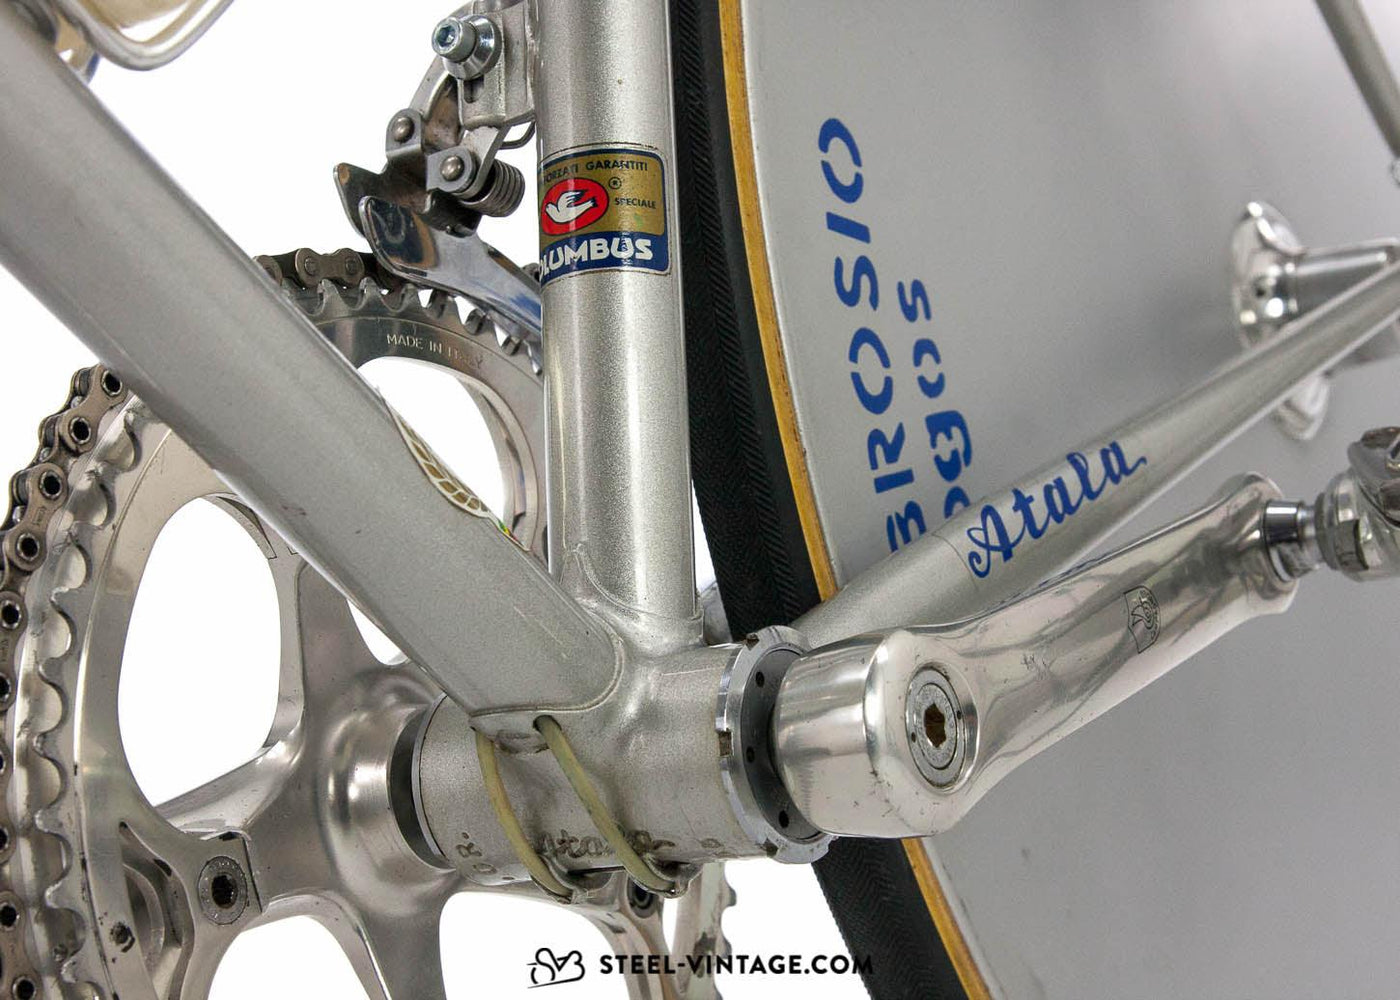 Atala Team Campagnolo Time Trial Bike 1988 - Steel Vintage Bikes